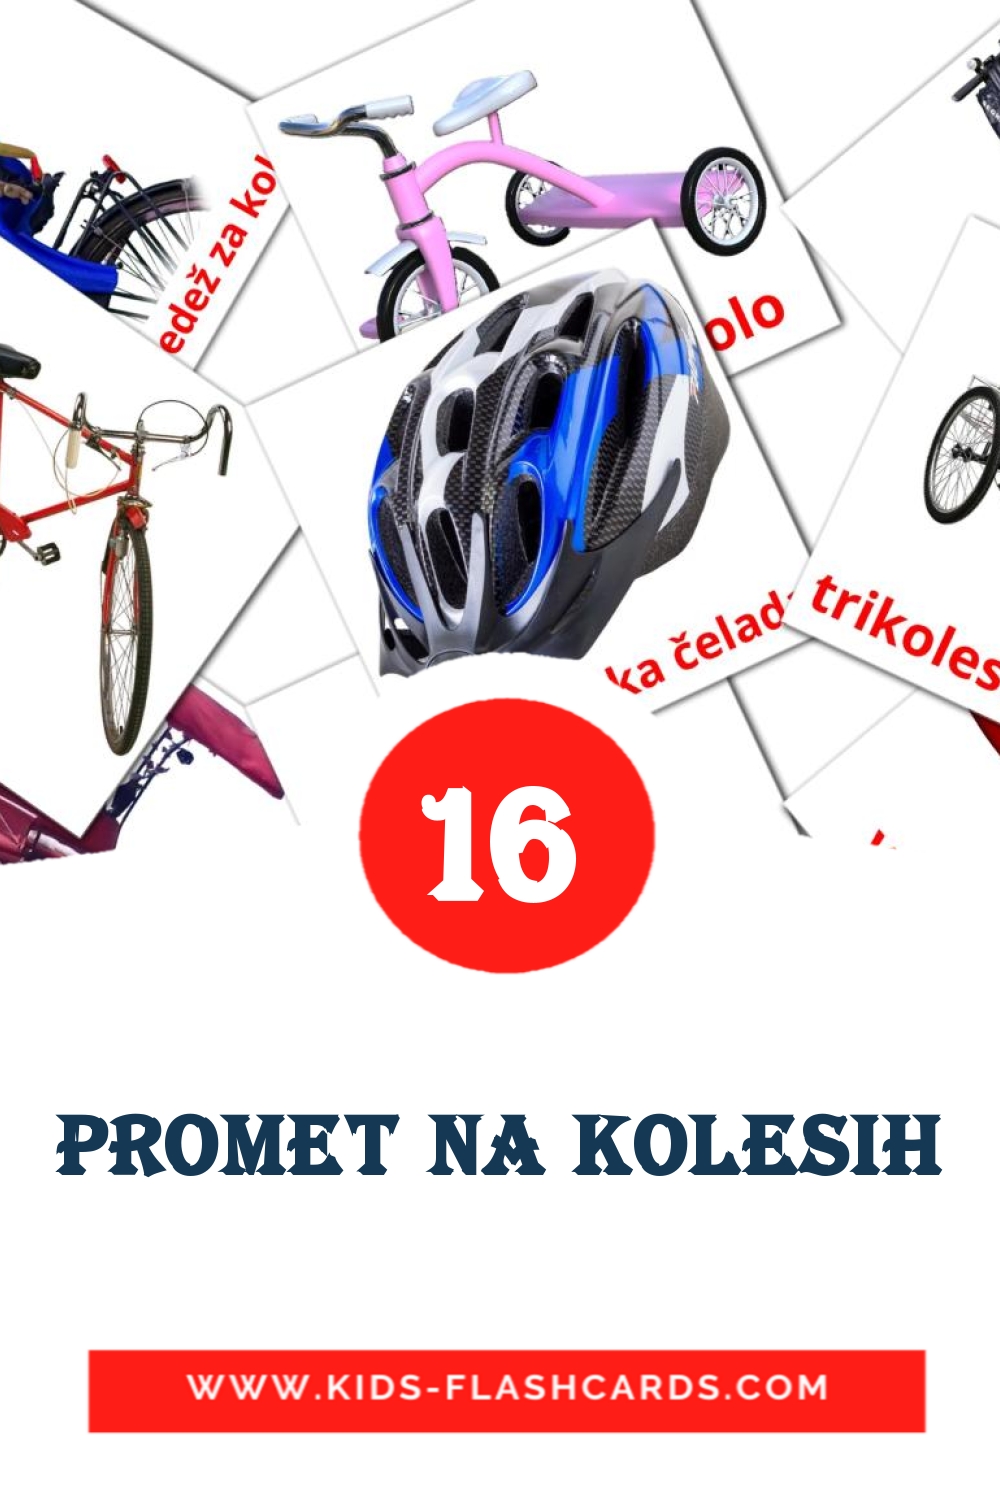 Promet na kolesih на словенском для Детского Сада (16 карточек)